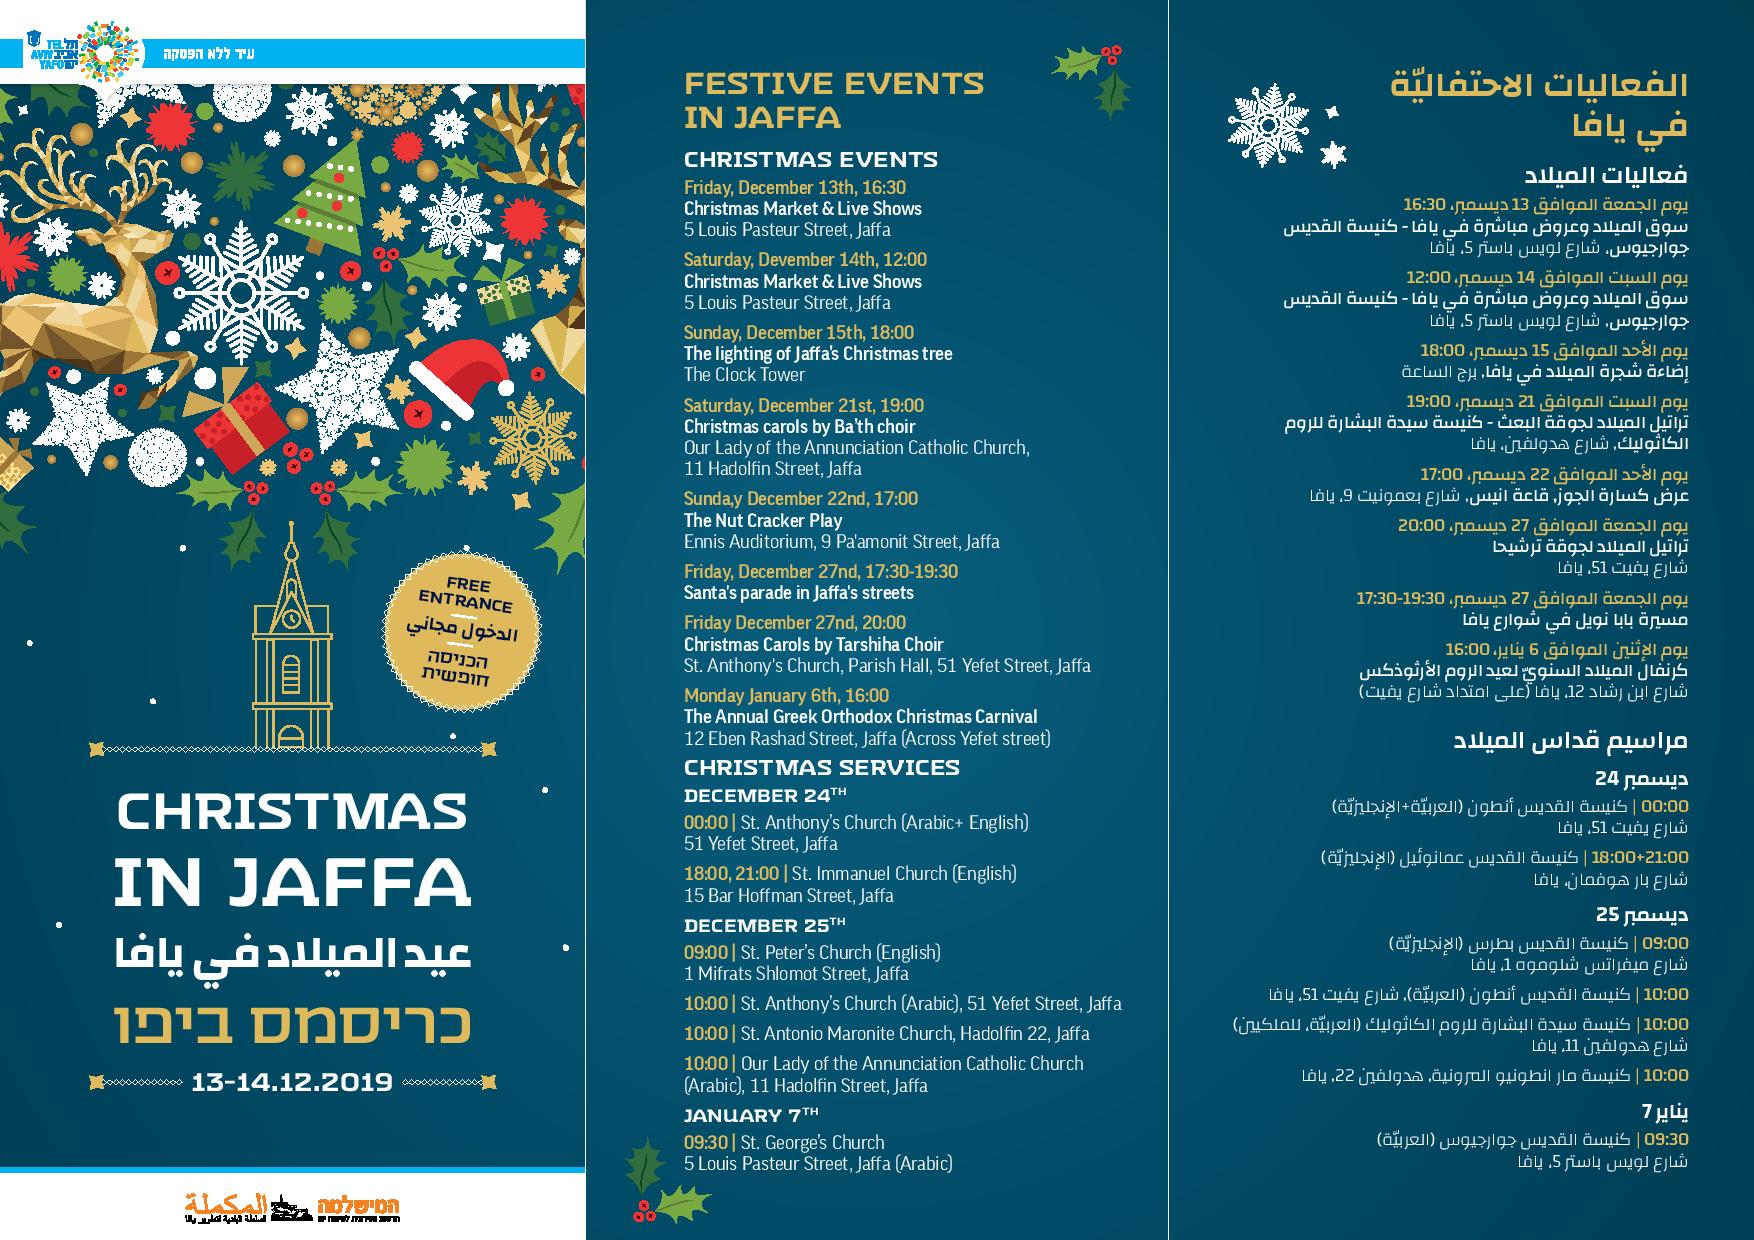  الجمعة والسبت: سوق الميلاد وعروض وفعاليات للأطفال في كنيسة الخضر بيافا 